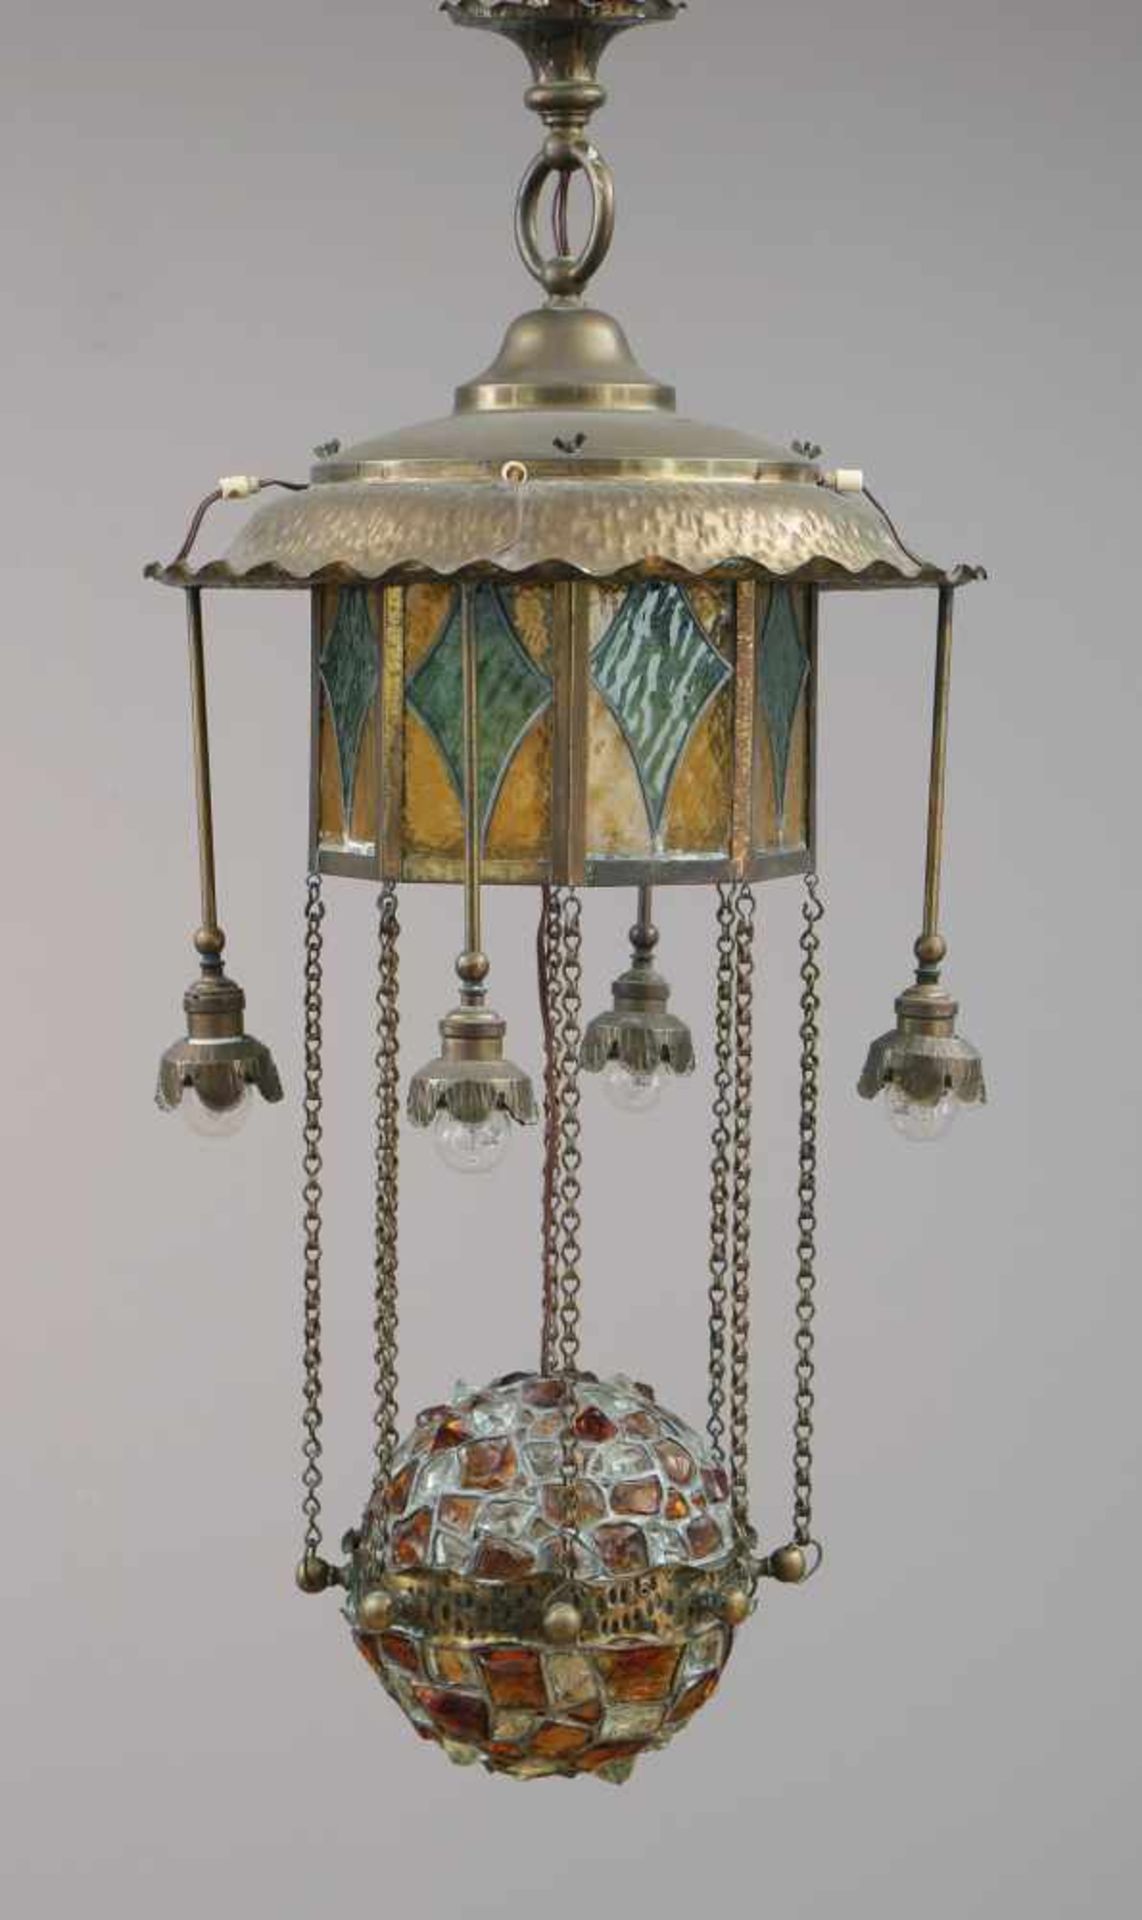 Jugendstil DeckenlampeMessingblech und Bleiglas, pagodenförmiger Aufbau, daran eine Halbkugel mit